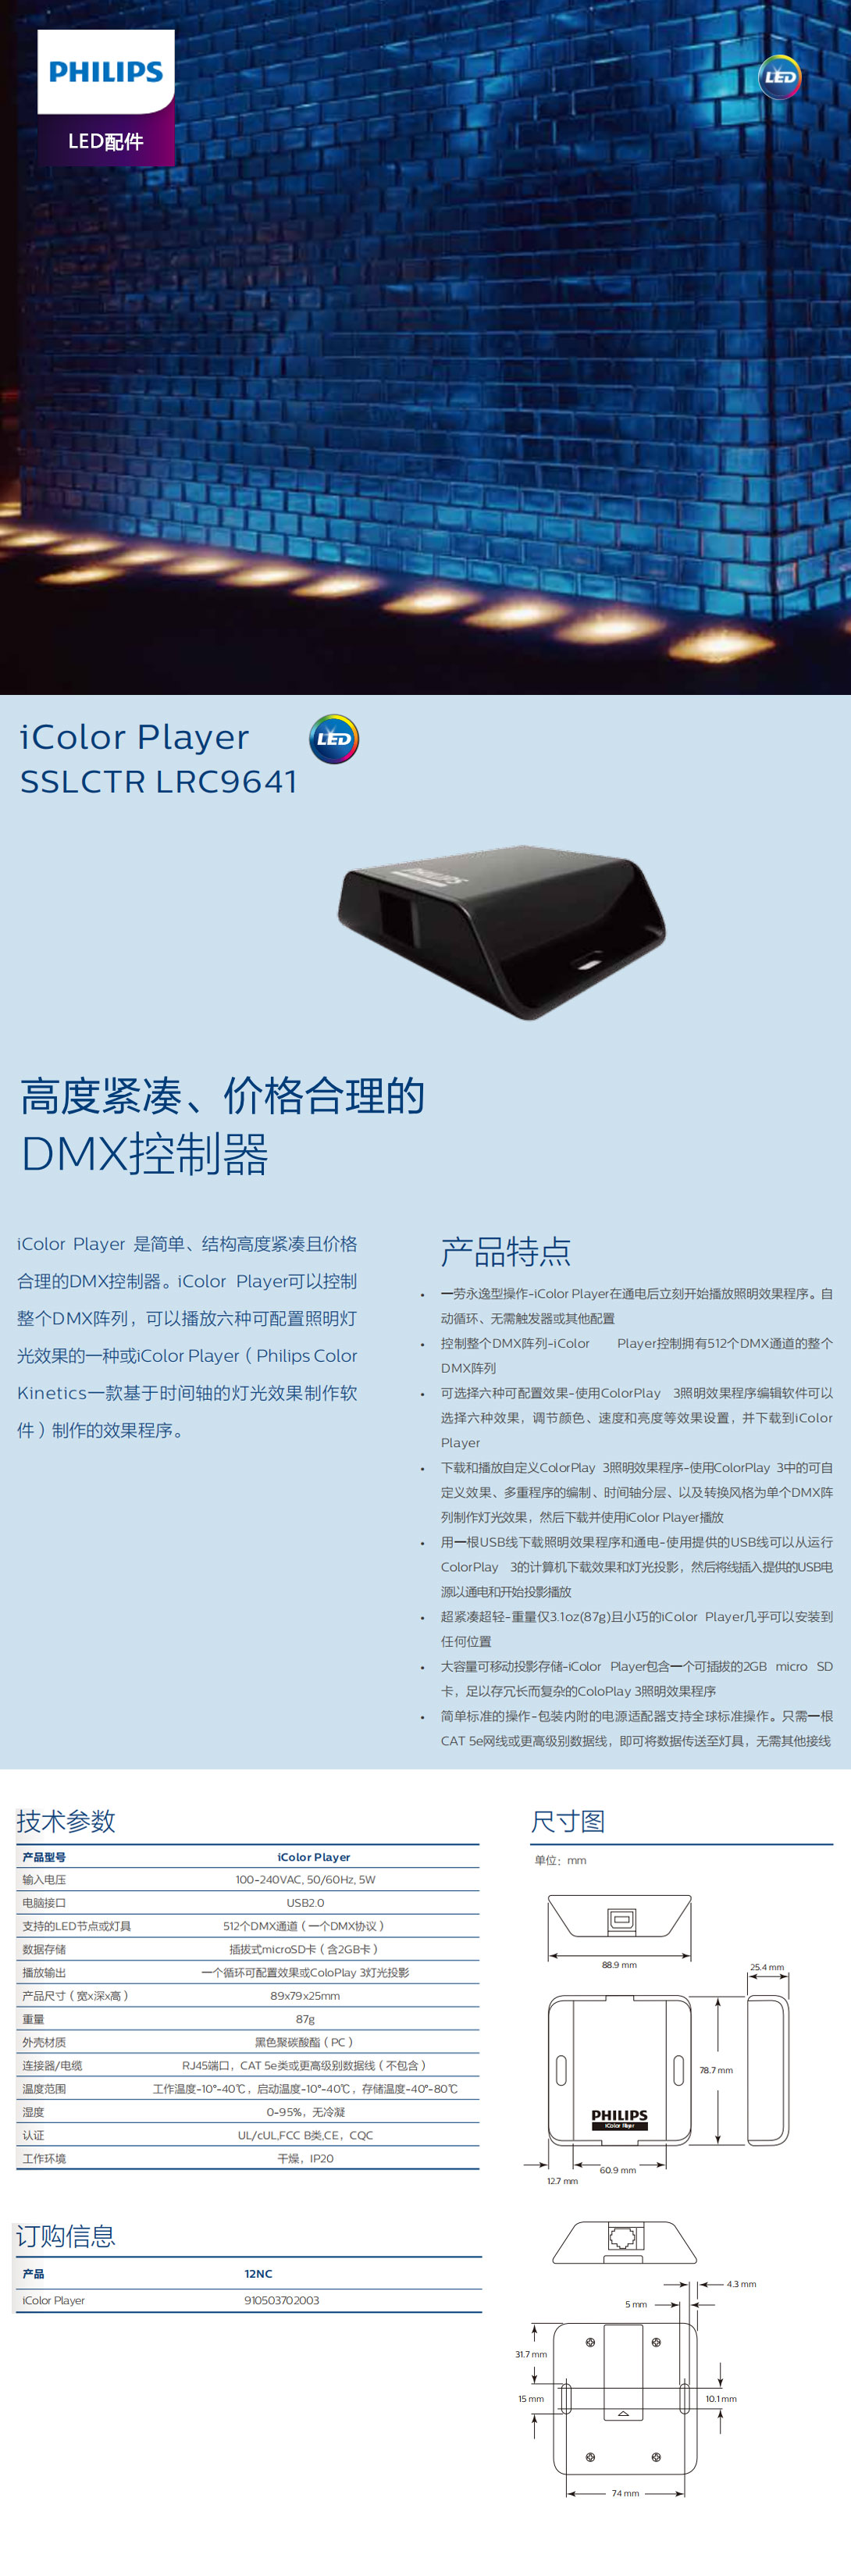 高度紧凑、价格合理的DMX控制器SSLCTR-LRC9641.jpg